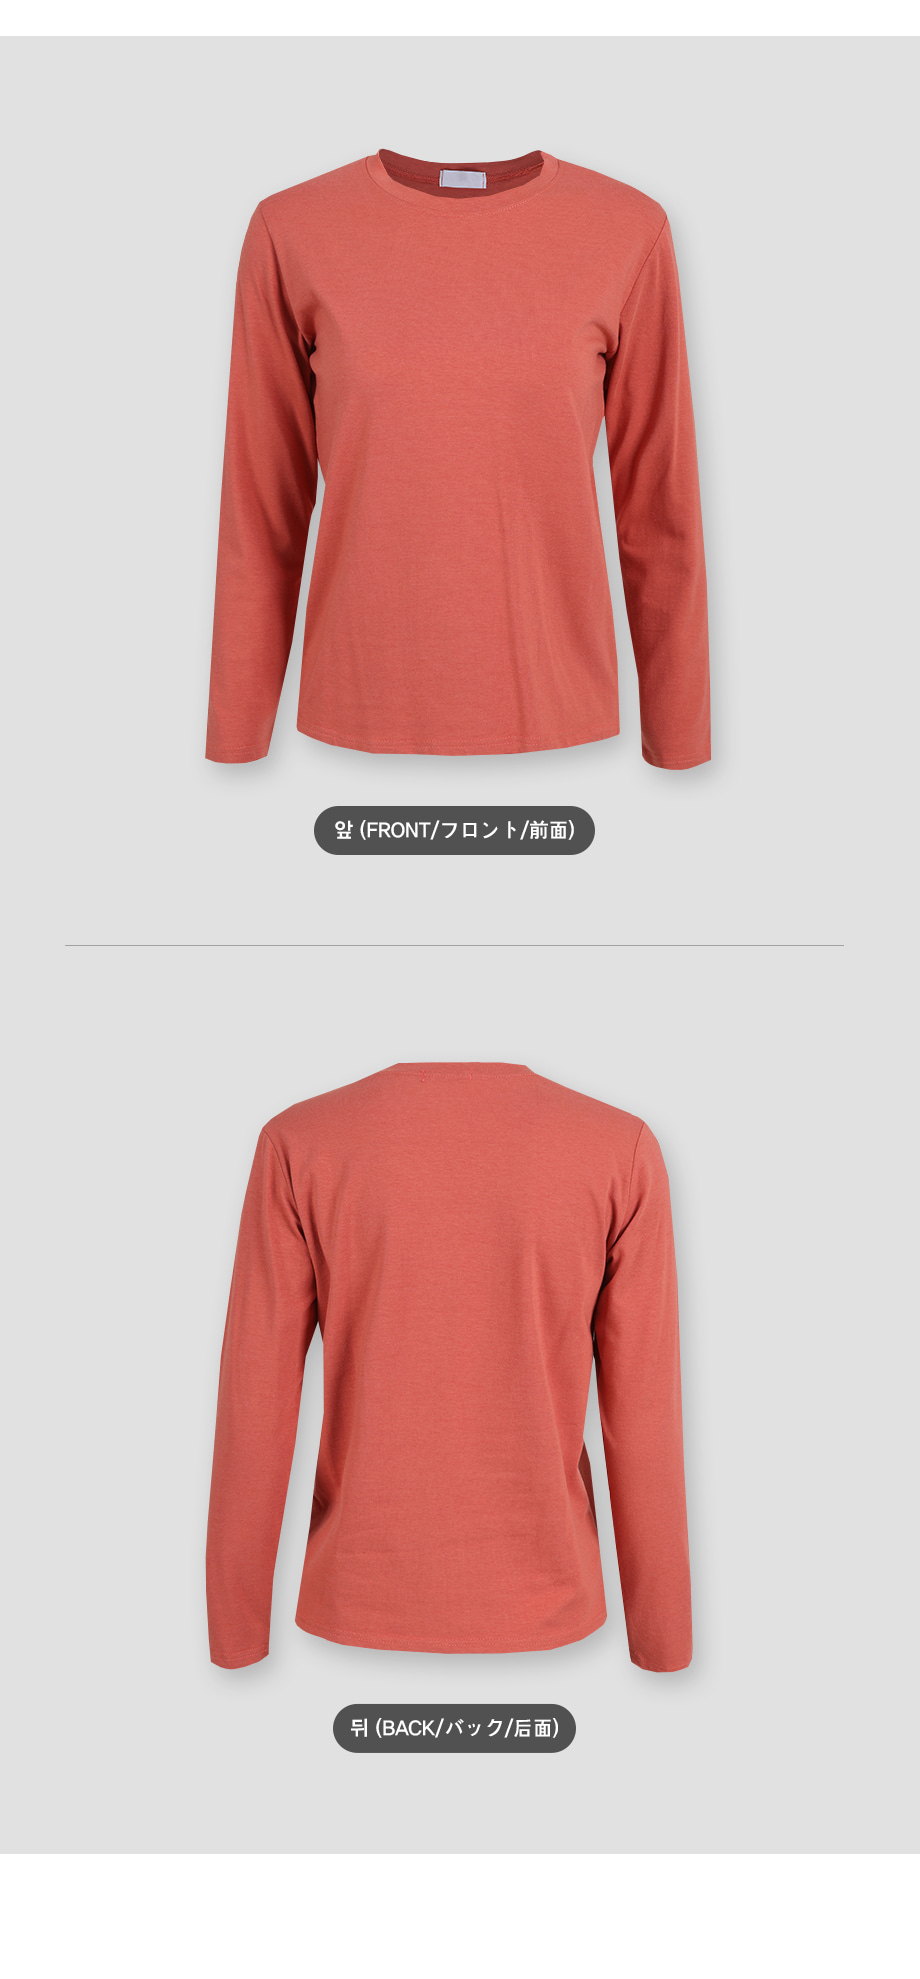 리리앤코 샌디비 모달 스판 라운드넥 티셔츠